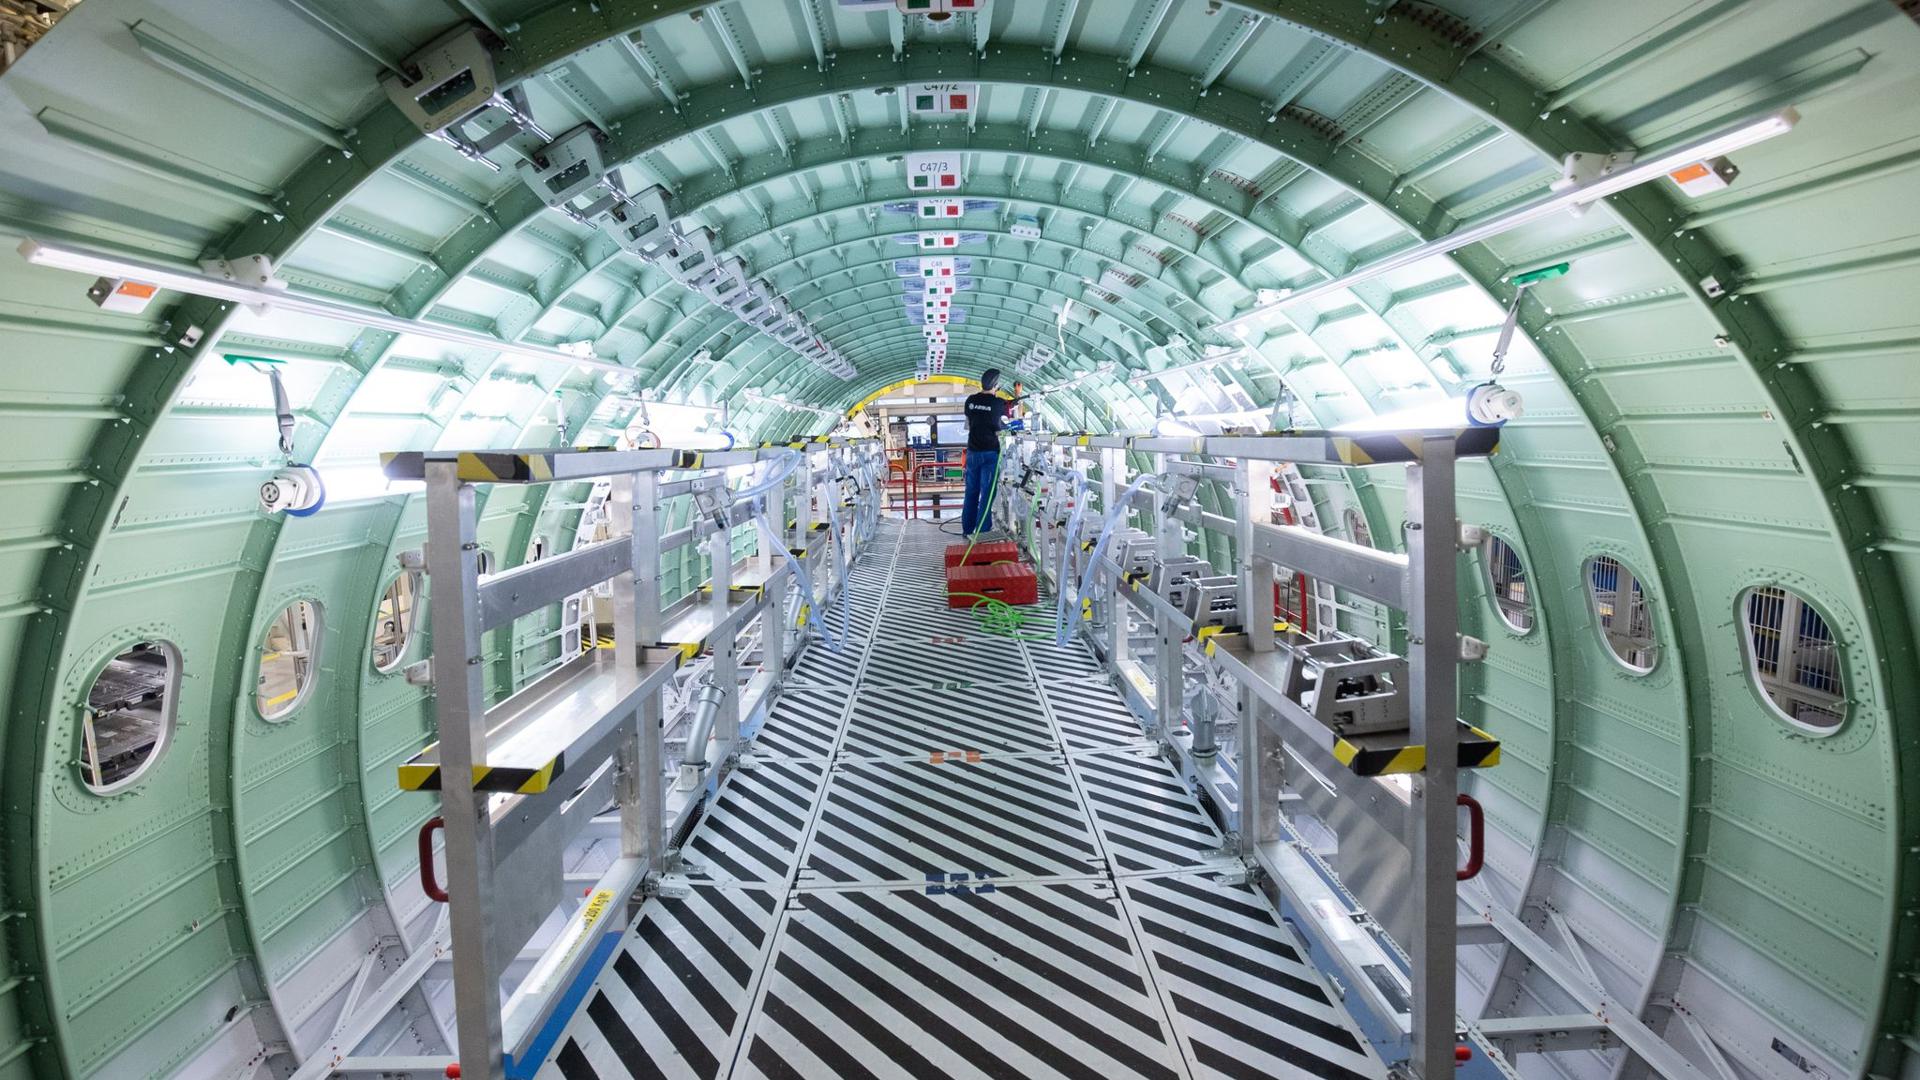 Ein Techniker arbeitet in einem Rumpfsegment einer Airbus A320. Die Industrie leidet unter der Corona-Pandemie.